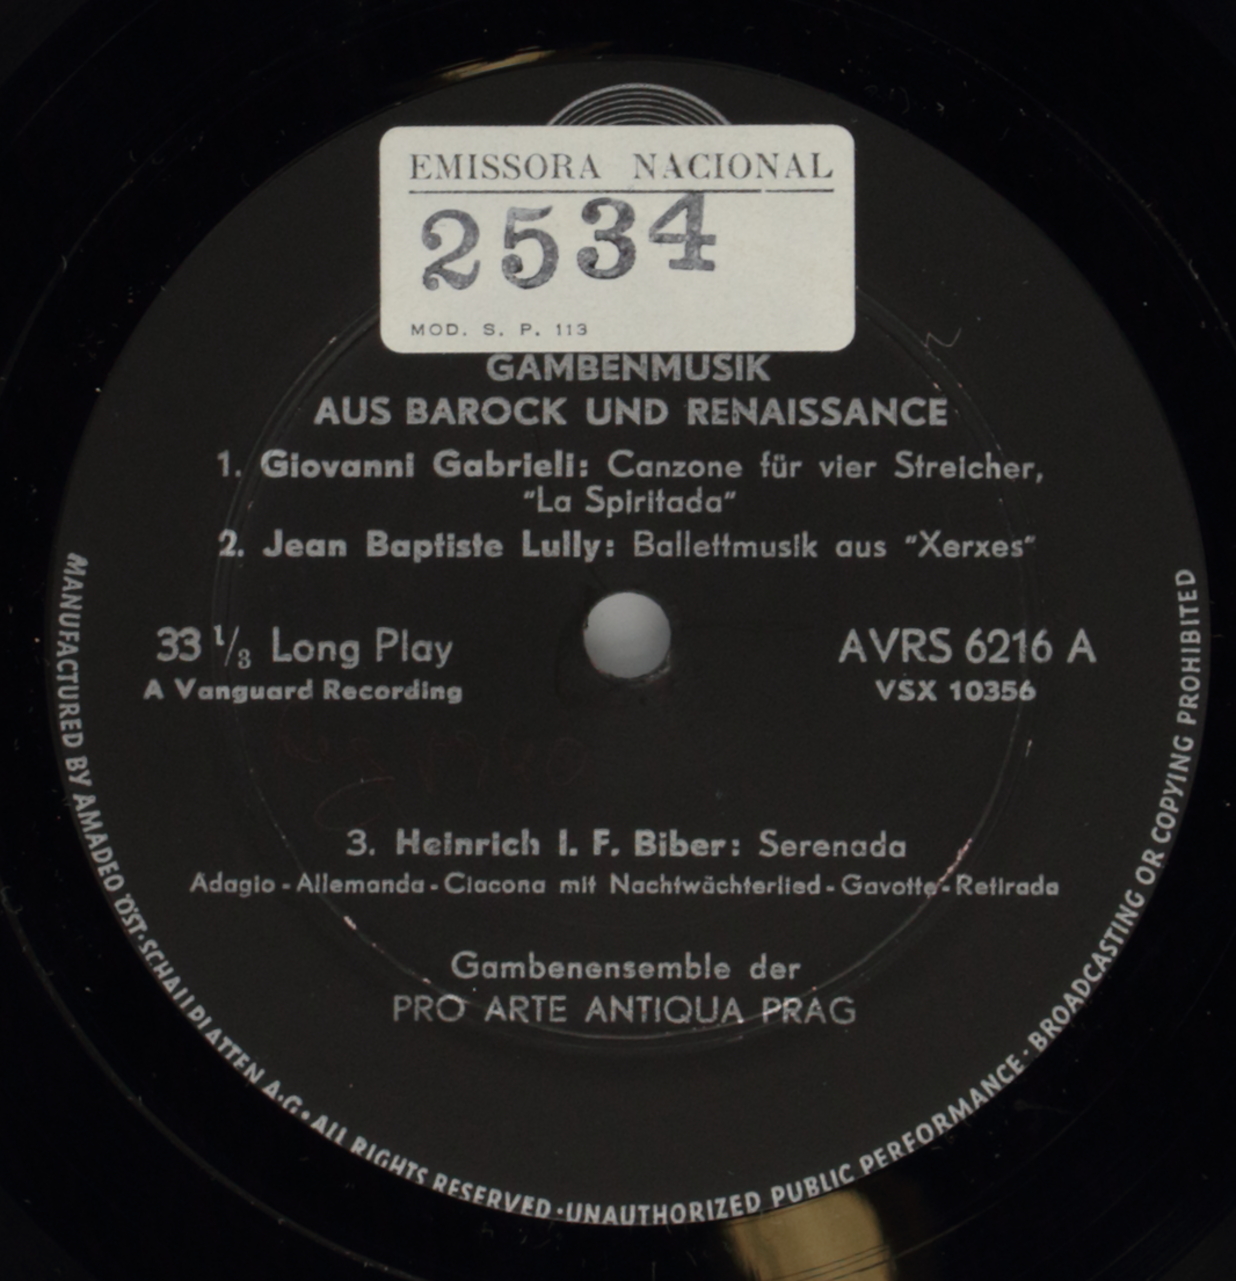 Gambenmusik aus Barock und Renaissance